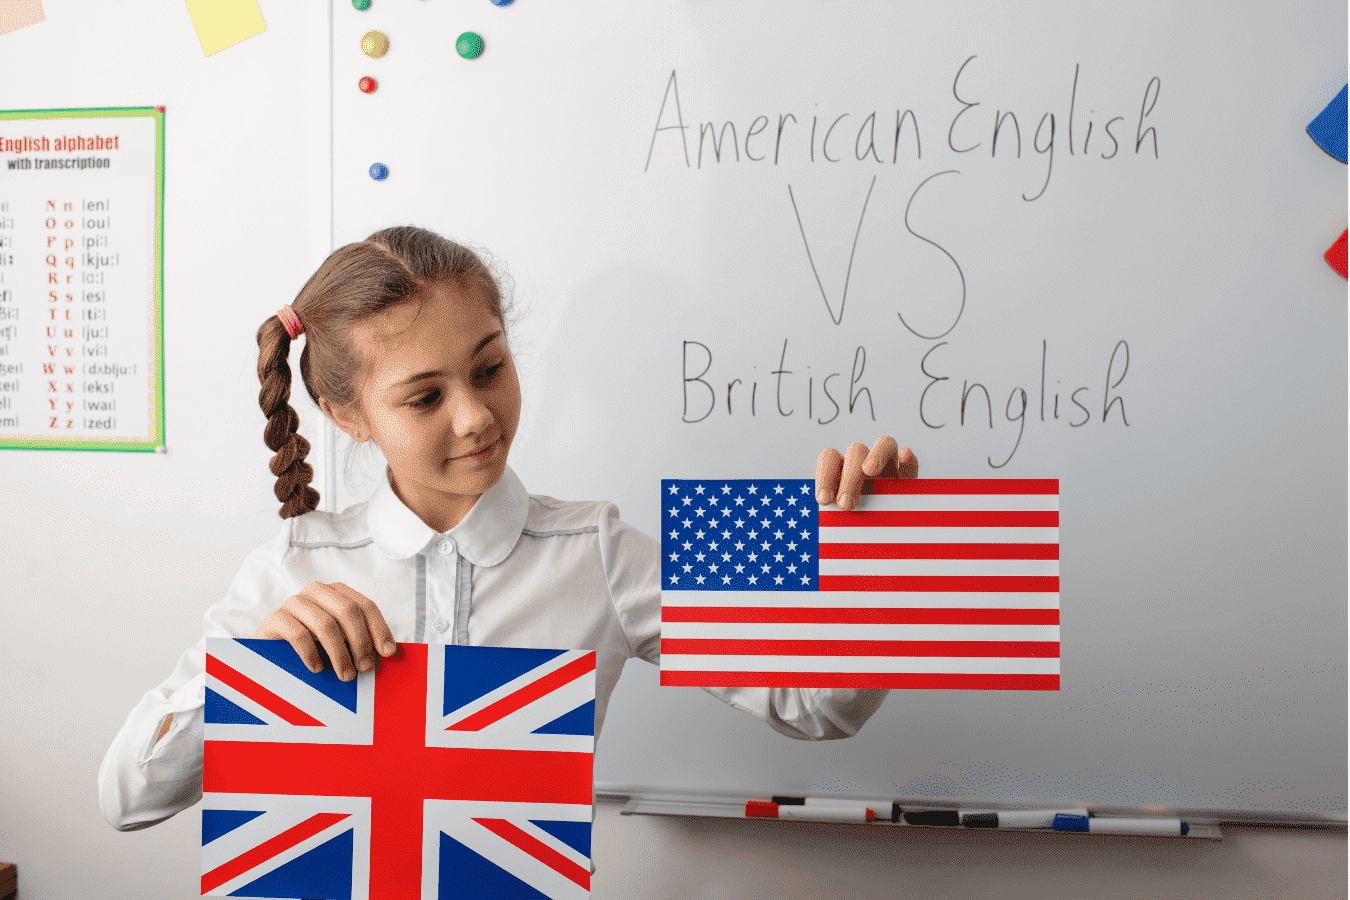 Data e hora em inglês britânico e inglês americano